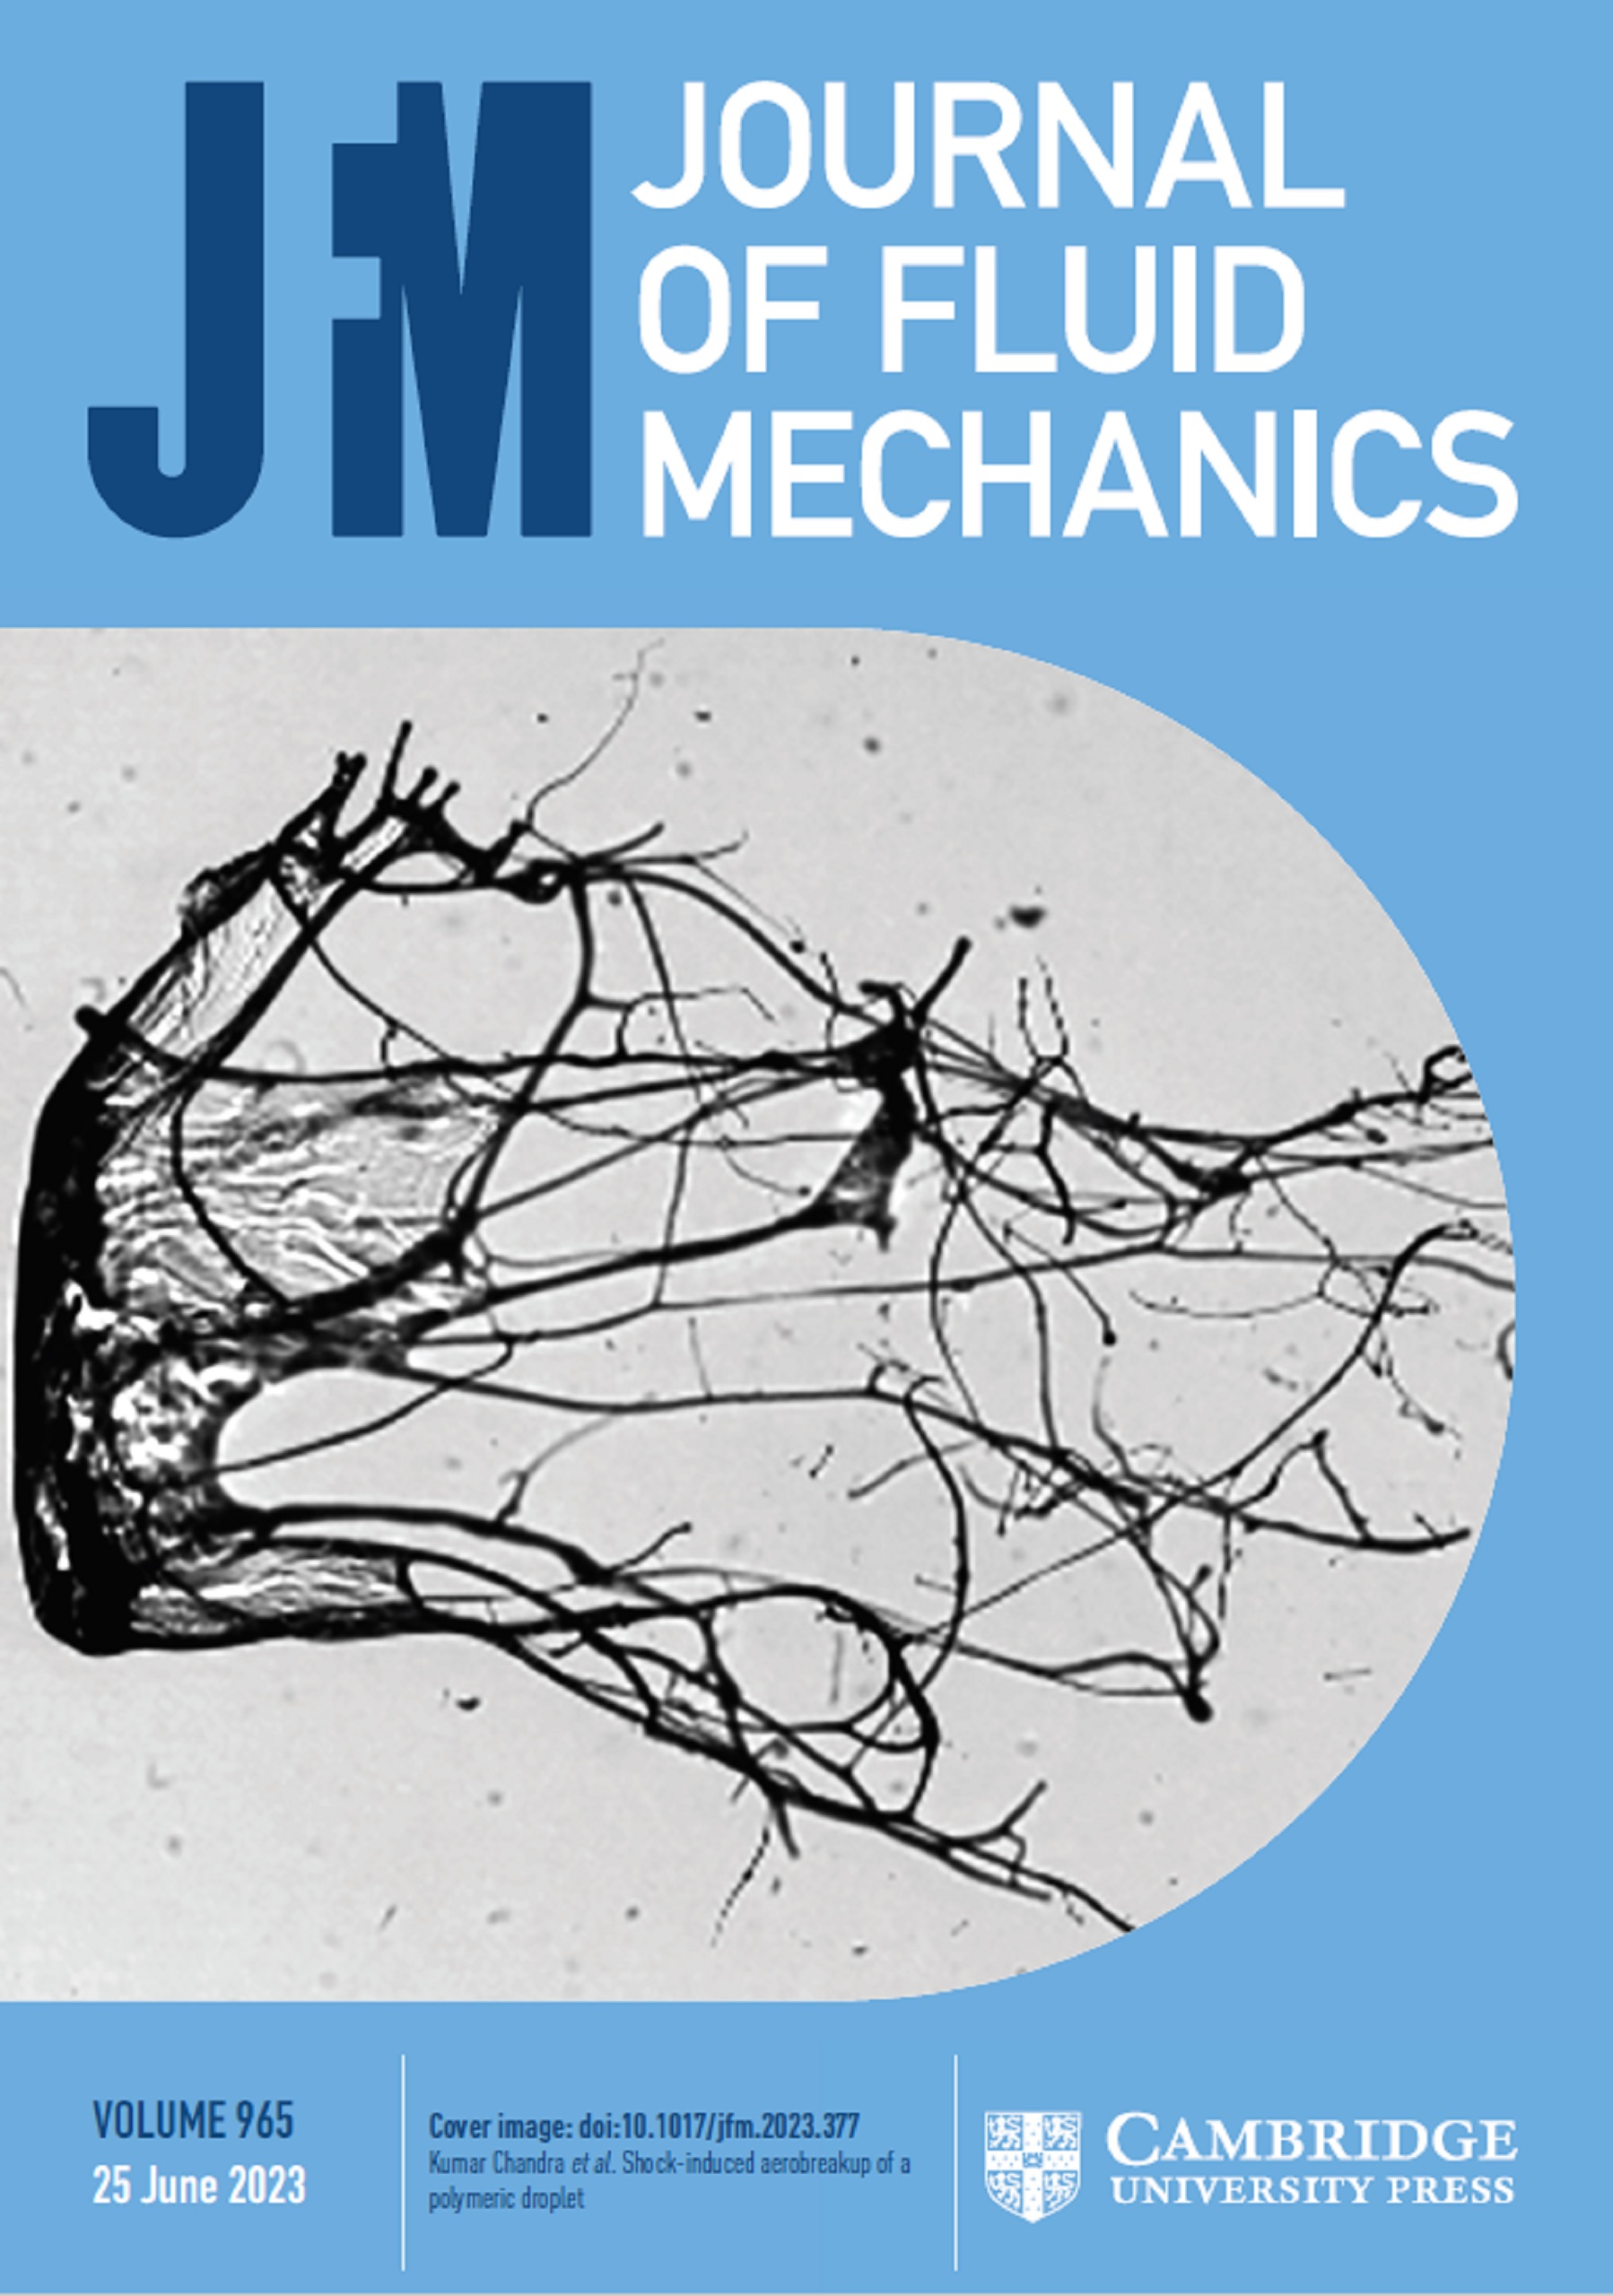 journal of fluid mechanics cover letter